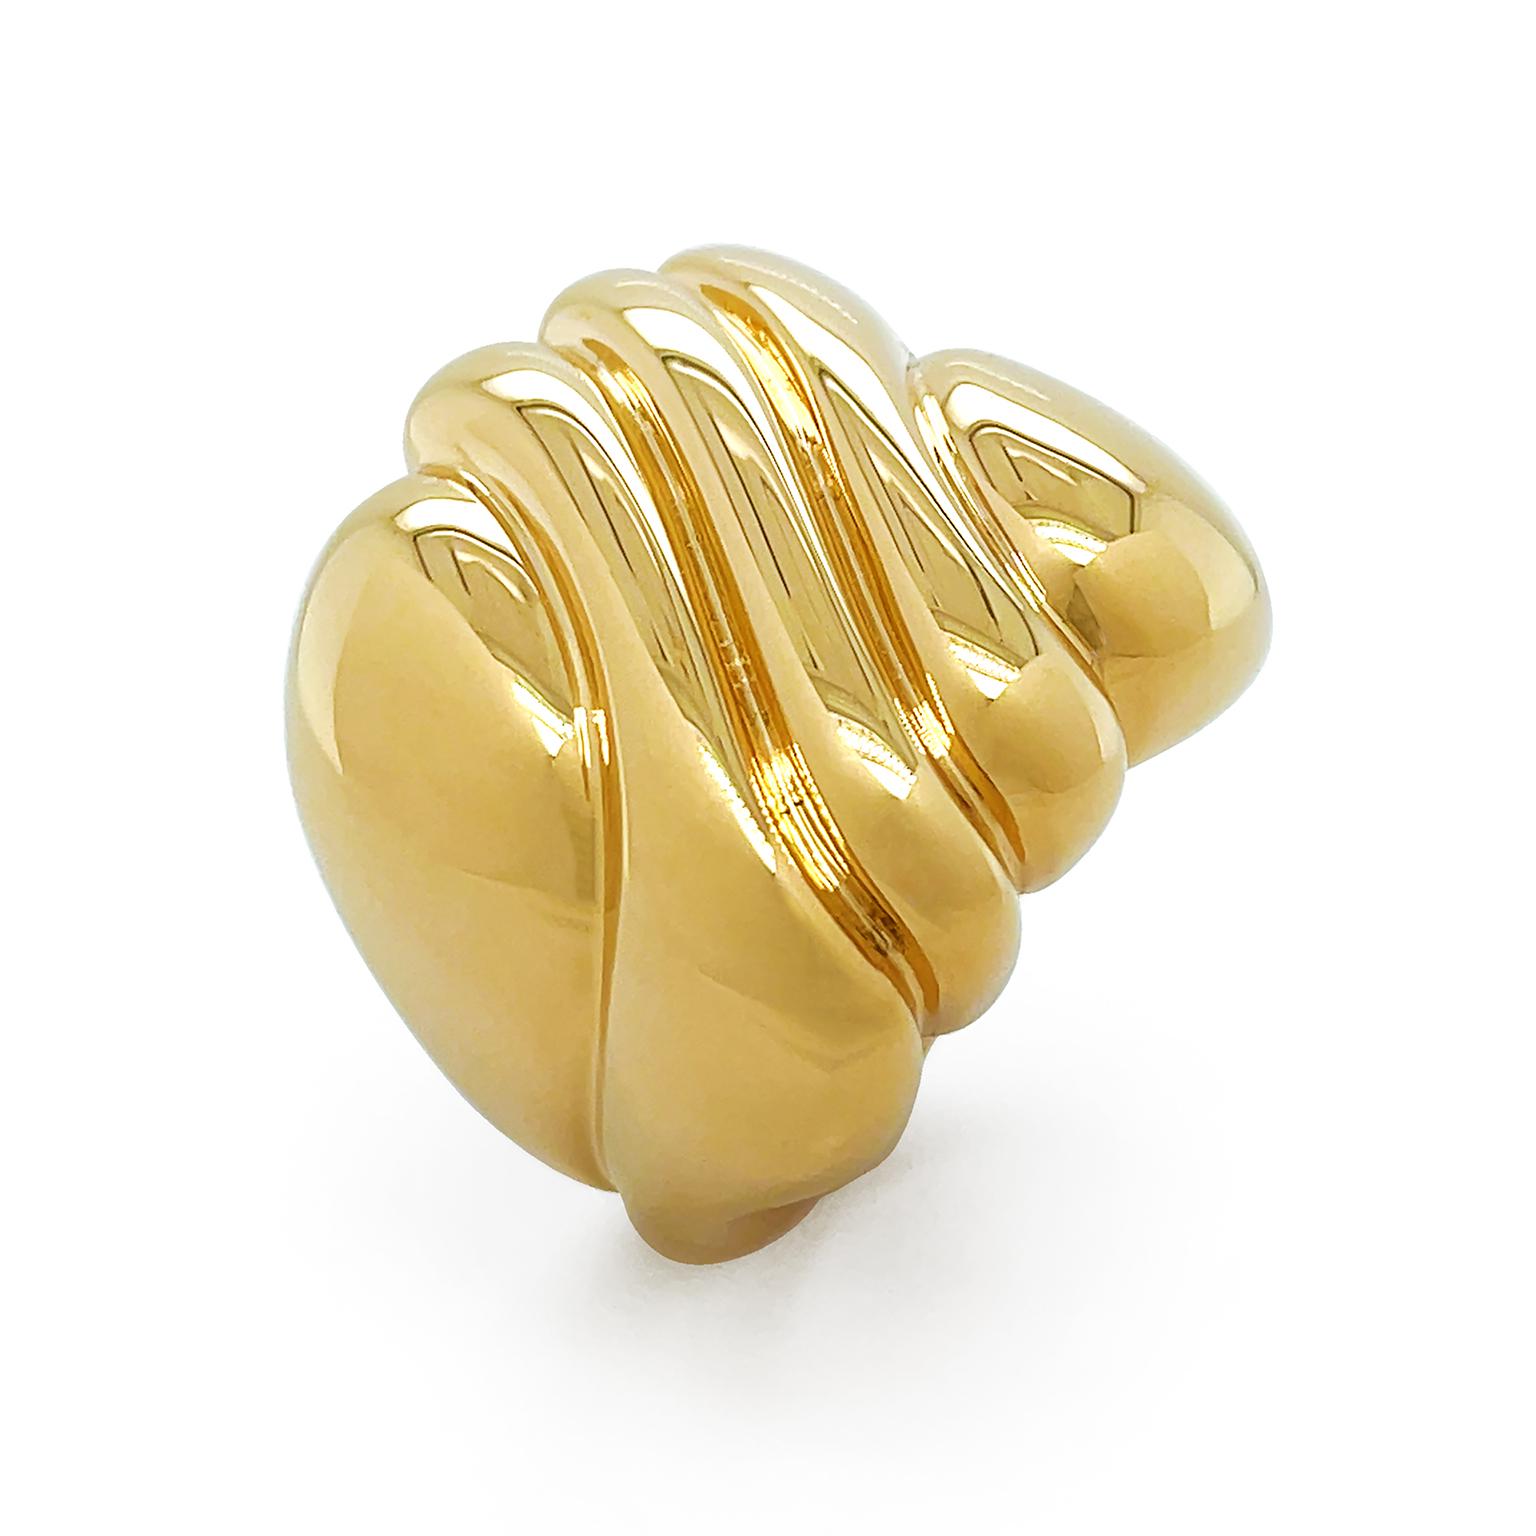 L'éclat lumineux de l'or jaune 18 carats poli danse sur l'anneau. Le métal épuré présente un motif asymétrique sculpté de douces vagues, donnant une impression de mouvement. Les dimensions de l'anneau sont de 0,875 pouce (largeur) par 0,875 pouce